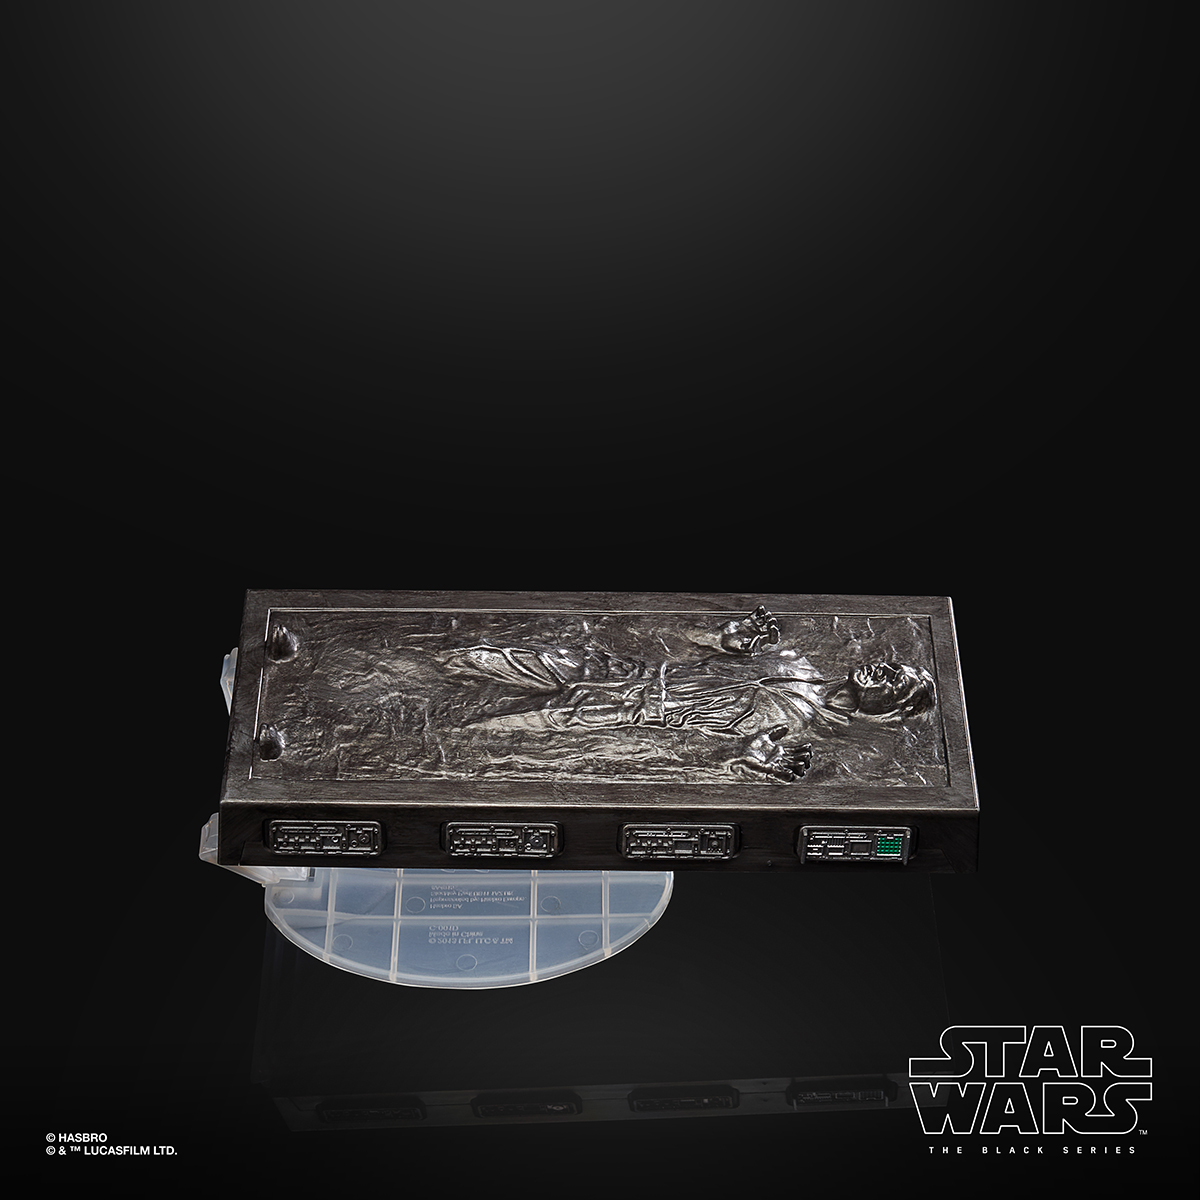 Star Wars The Black Series 6 Inch Han Solo Carbonite Figure Oop 7